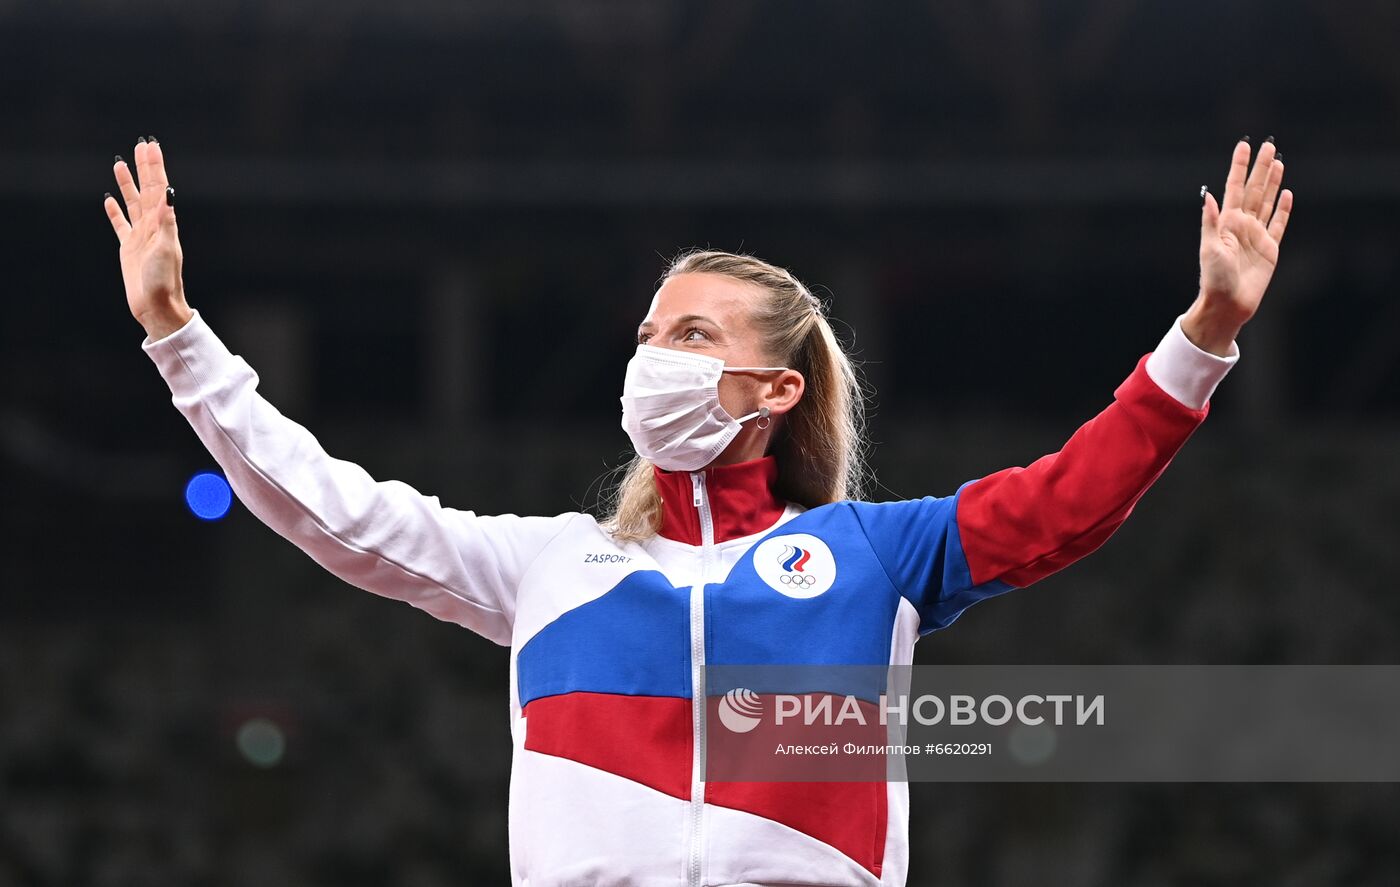 Олимпиада-2020. А. Сидорова завоевала серебряную медаль в прыжках с шестом